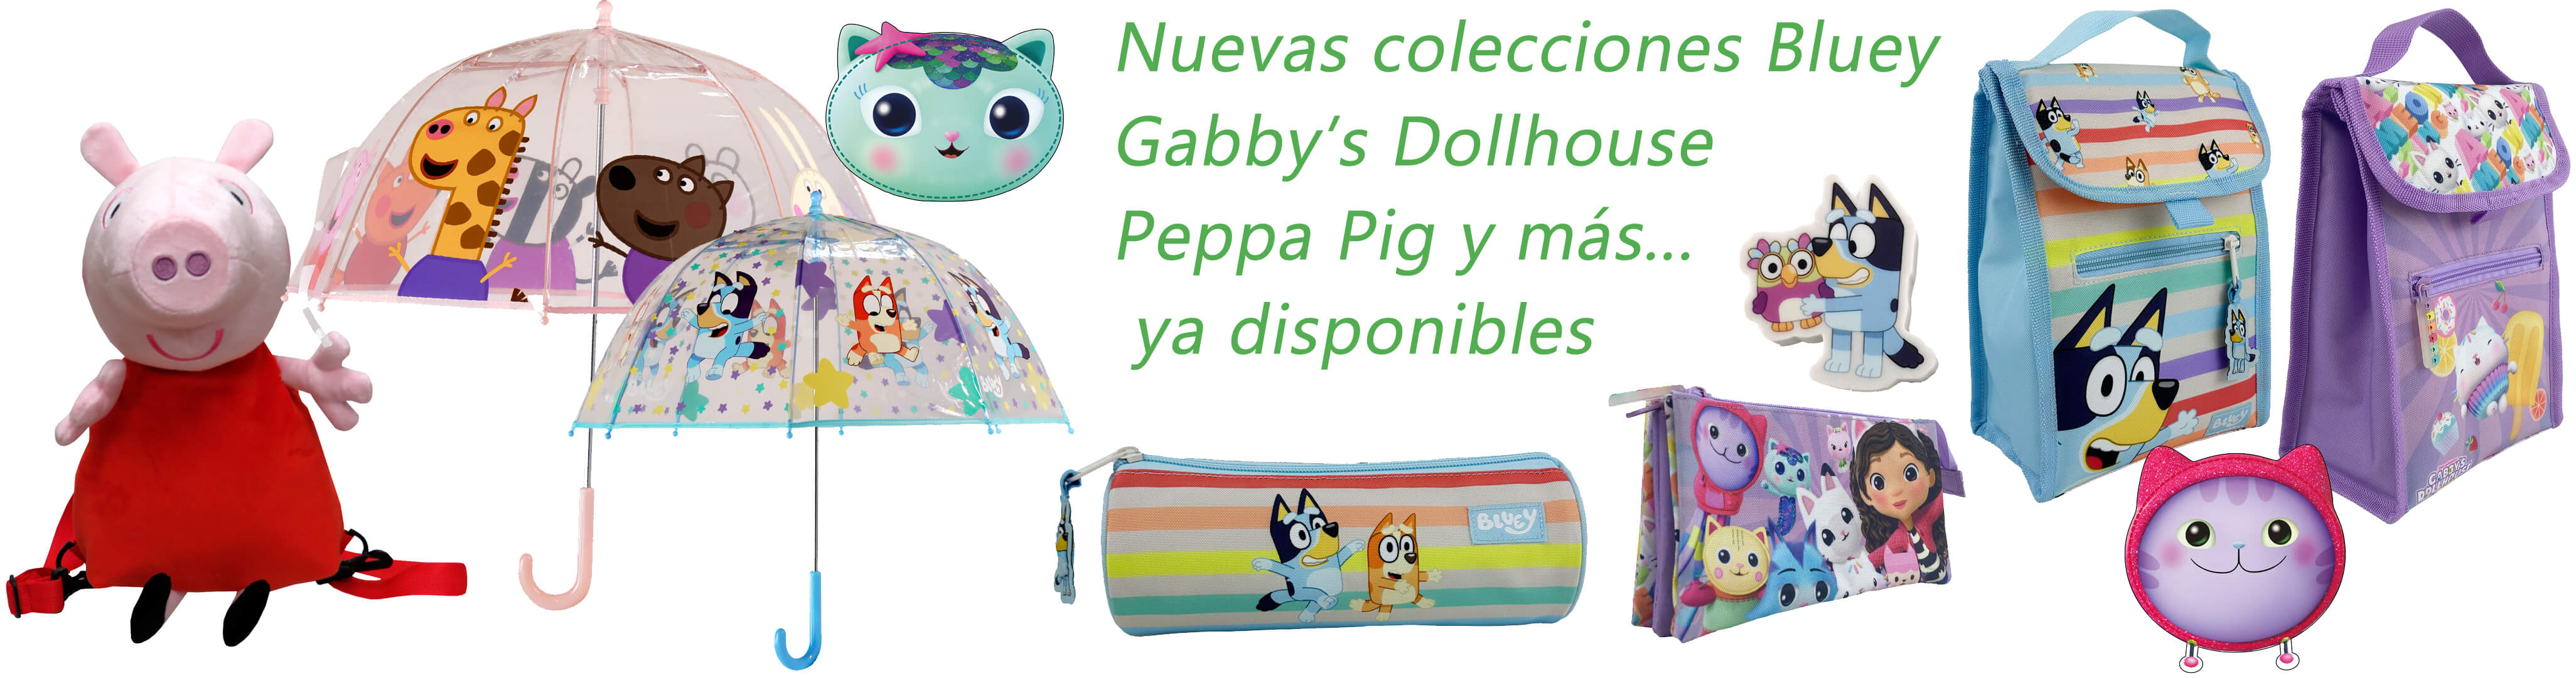 Nuevas colecciones Bluey, Gabby’s Dollhouse, 
Peppa Pig, Kawanimals, FC. Barcelona y más...
 ya disponibles